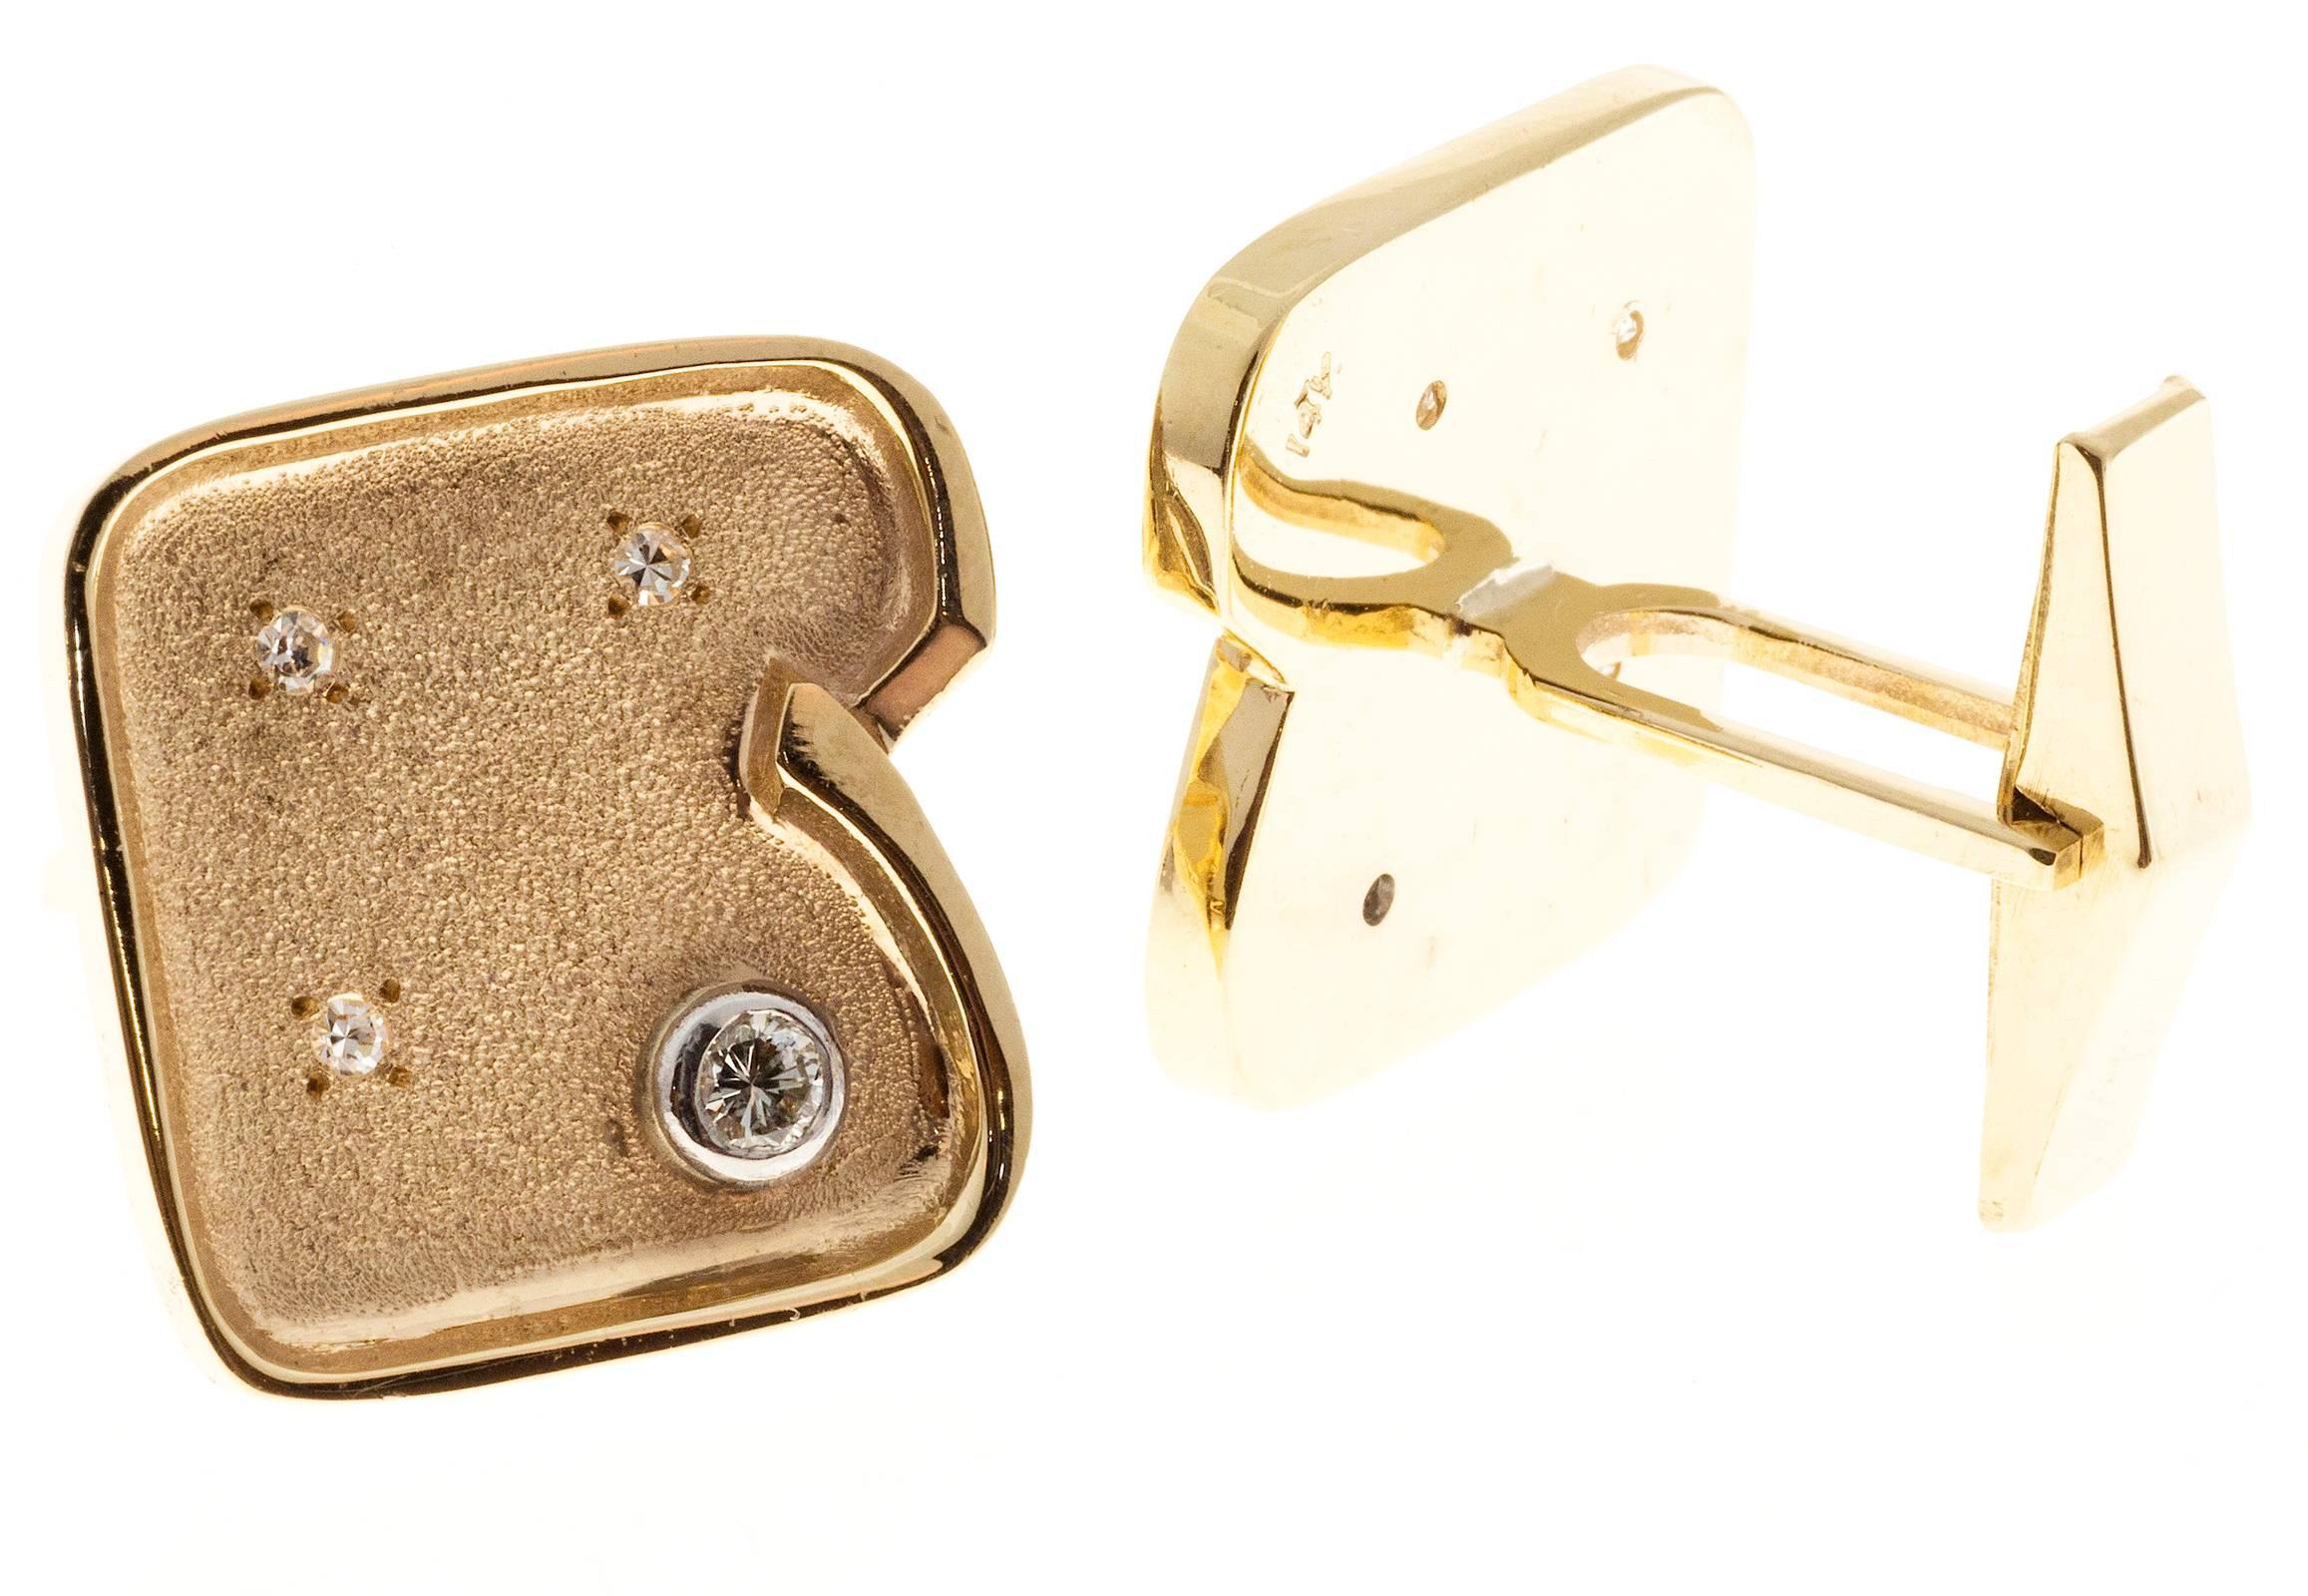 manschettenknöpfe aus 14k Gelbgold um 1960 mit strukturierter Mitte.  Besetzt mit Vollschliff-Diamanten in Lünetten und Perlenbesatz mit Einzelschliff-Diamanten.  Rückseiten im Clip-Stil.

2 runde Diamanten mit einem Gesamtgewicht von ca.